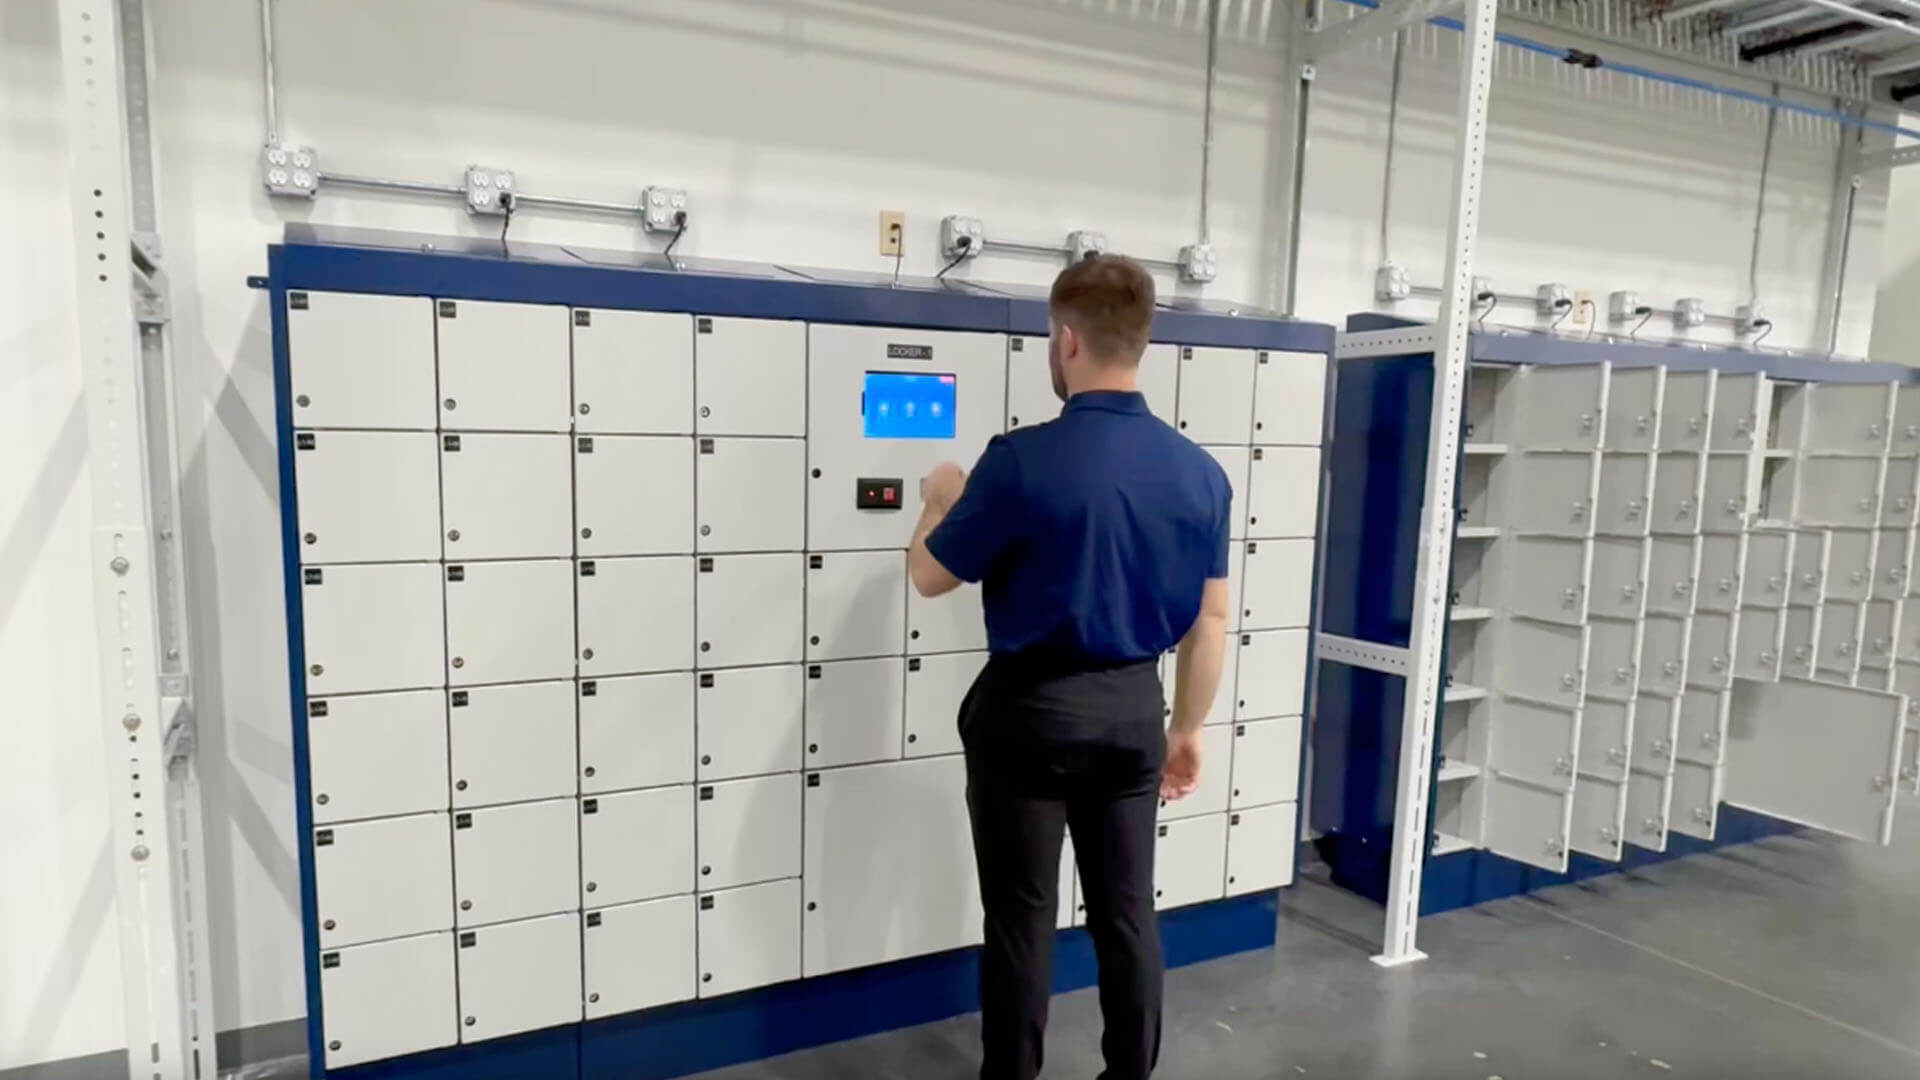 An employee using a smart locker to retrieve an asset